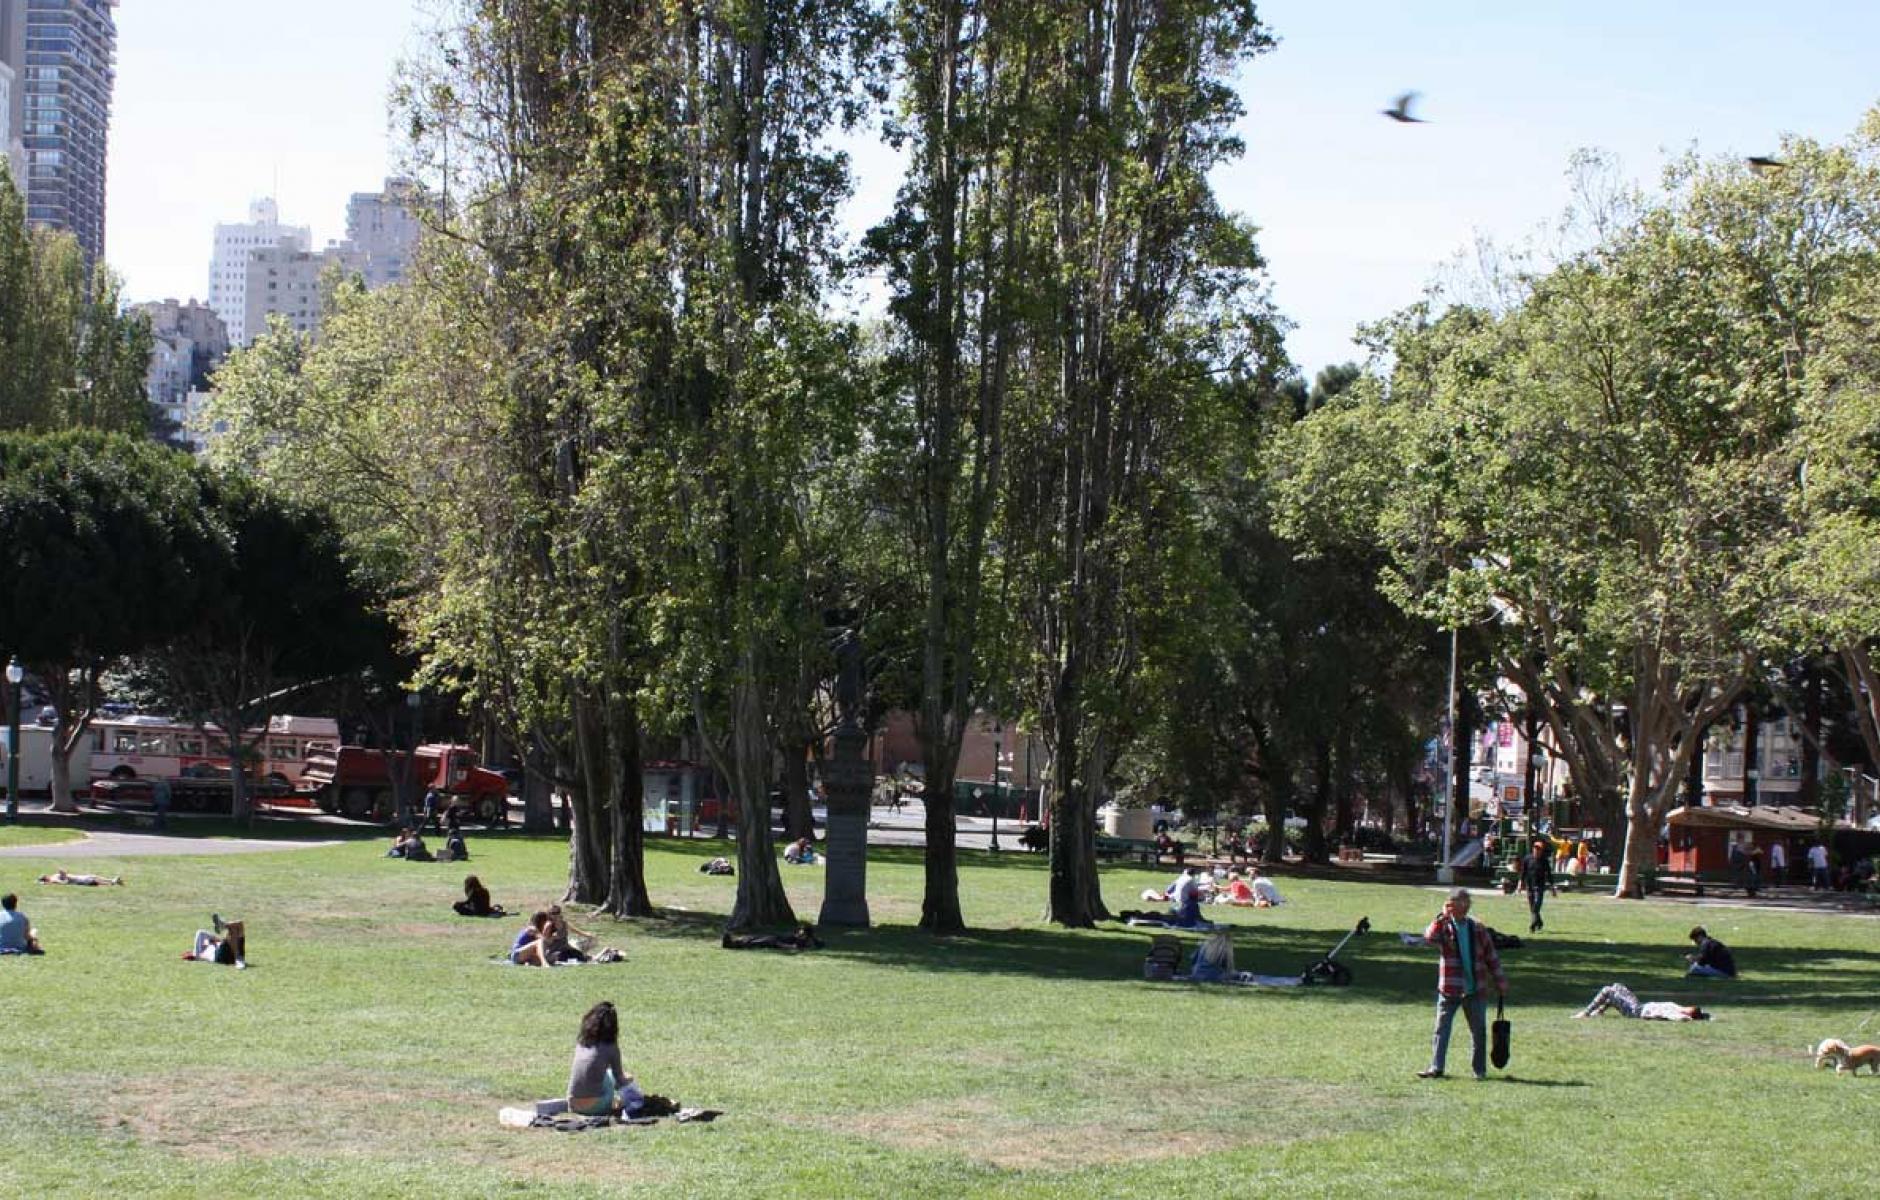 What makes a good urban park | CNU